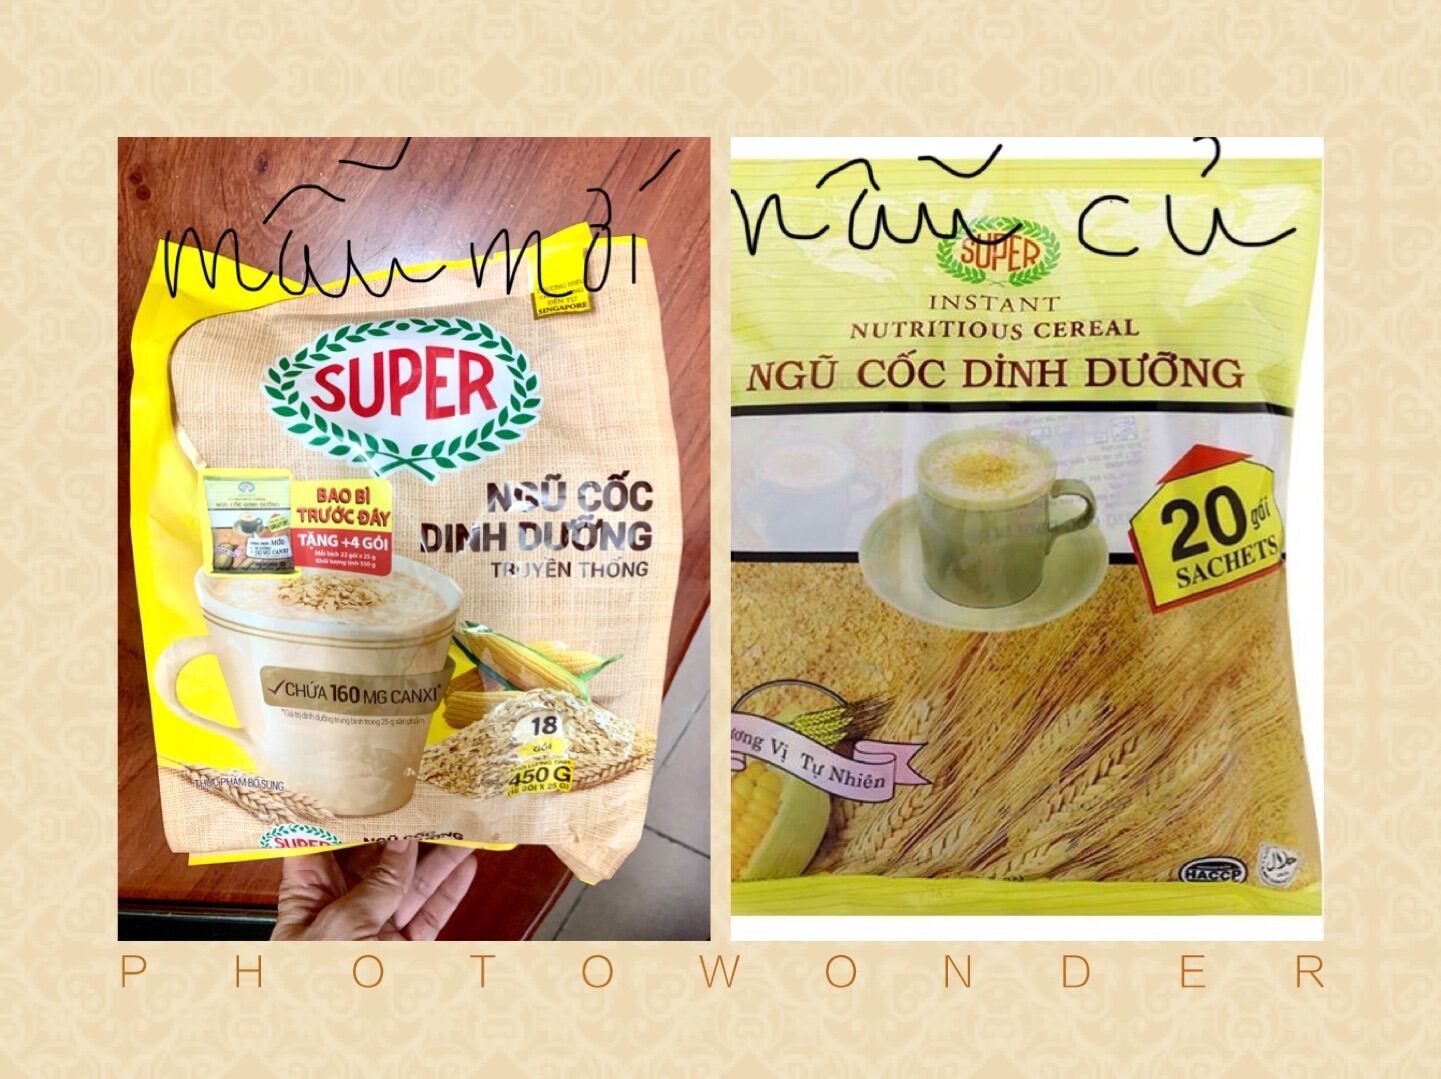 Ngũ Cốc Dinh Dưỡng của Singapore, bột ngủ cốc Super ít đường 450g 18goi x